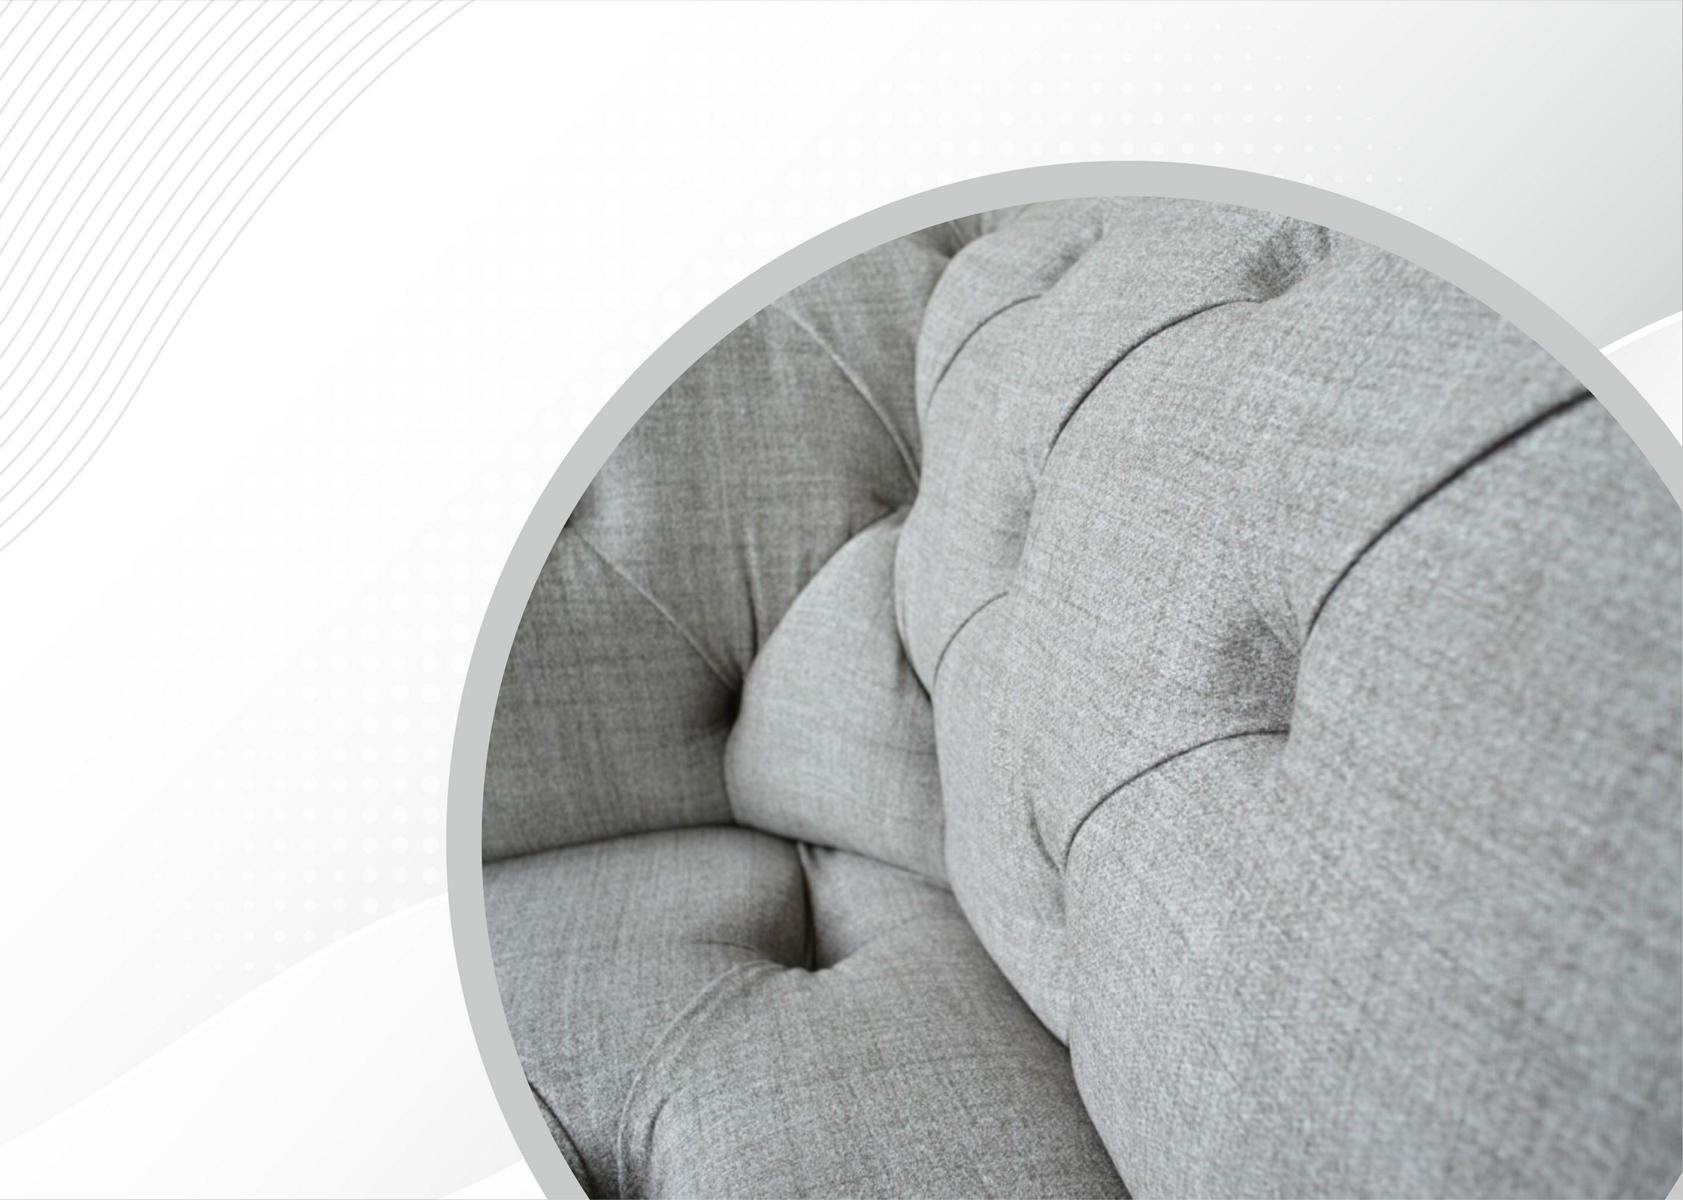 JVmoebel Chesterfield-Sofa, Chesterfield Sofa Sitzer mit cm, 220 Knöpfen. Couch Design Rückenlehne 3 Die